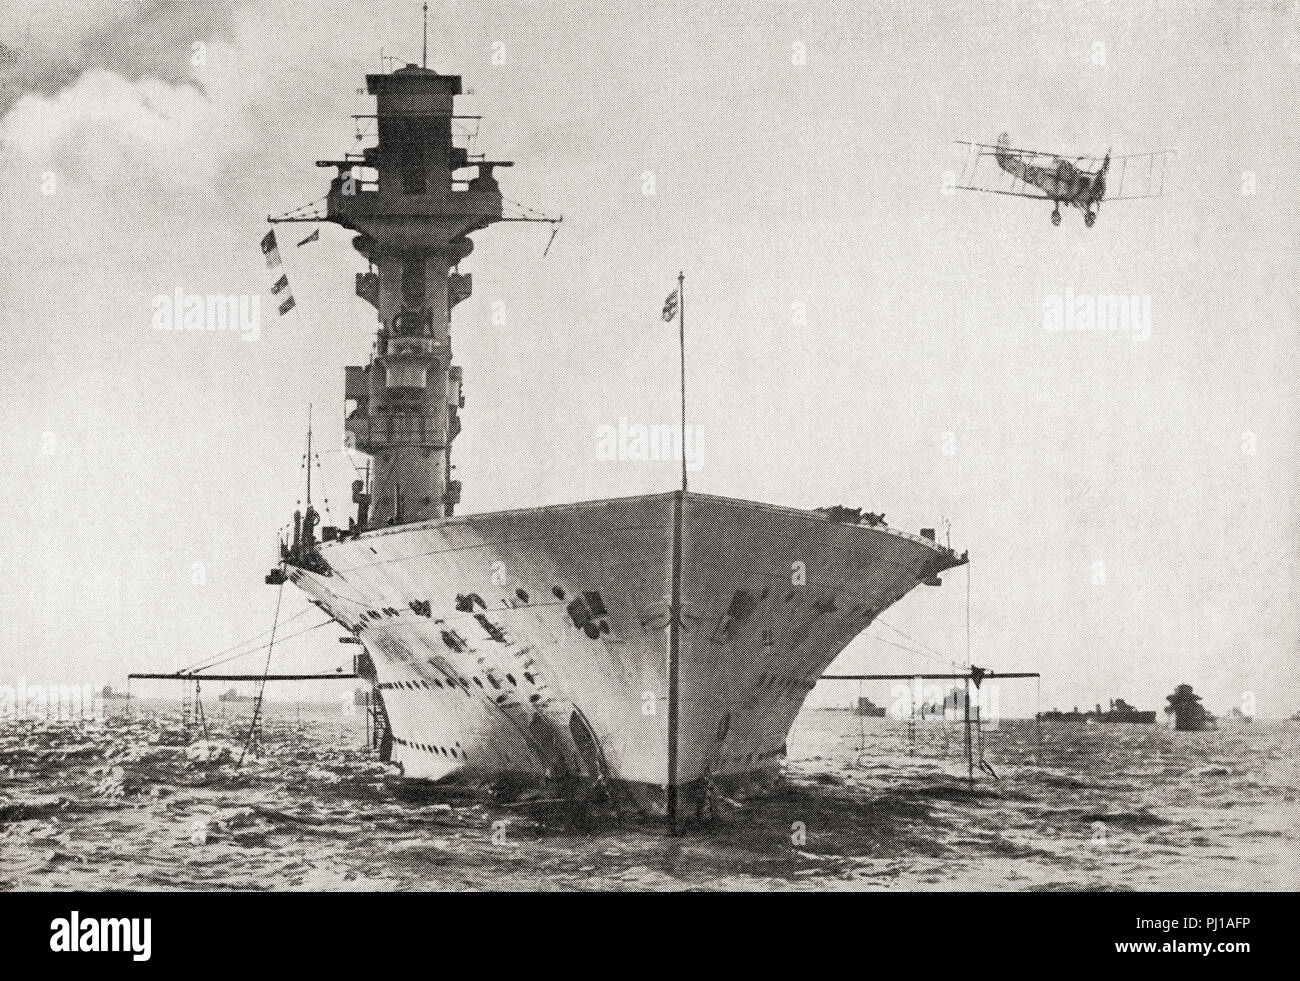 HMS Hermes, British Aircraft Carrier costruita per la Royal Navy, il mondo della prima nave ad essere progettato come una portaerei, ella fu affondato da aerei giapponesi, 9 aprile 1942. Dal libro di navi, pubblicato c.1920. Foto Stock